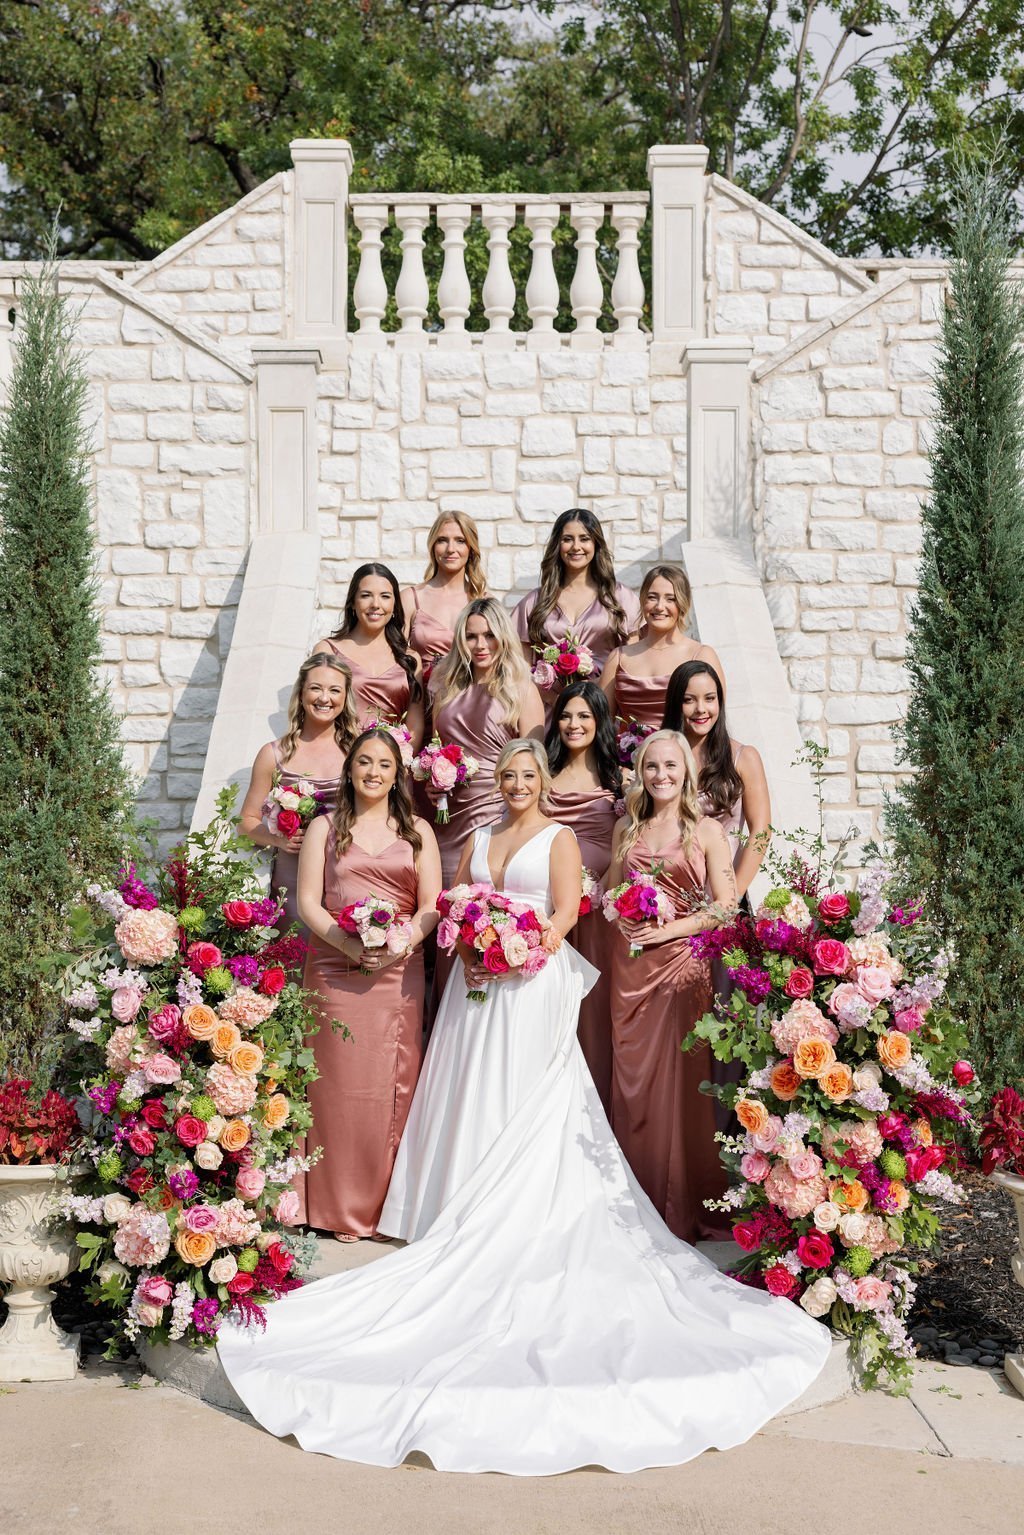 www.brightonabbey.com-wedding-venue-castle-staircase-bridesmaids-bride-floral.jpg